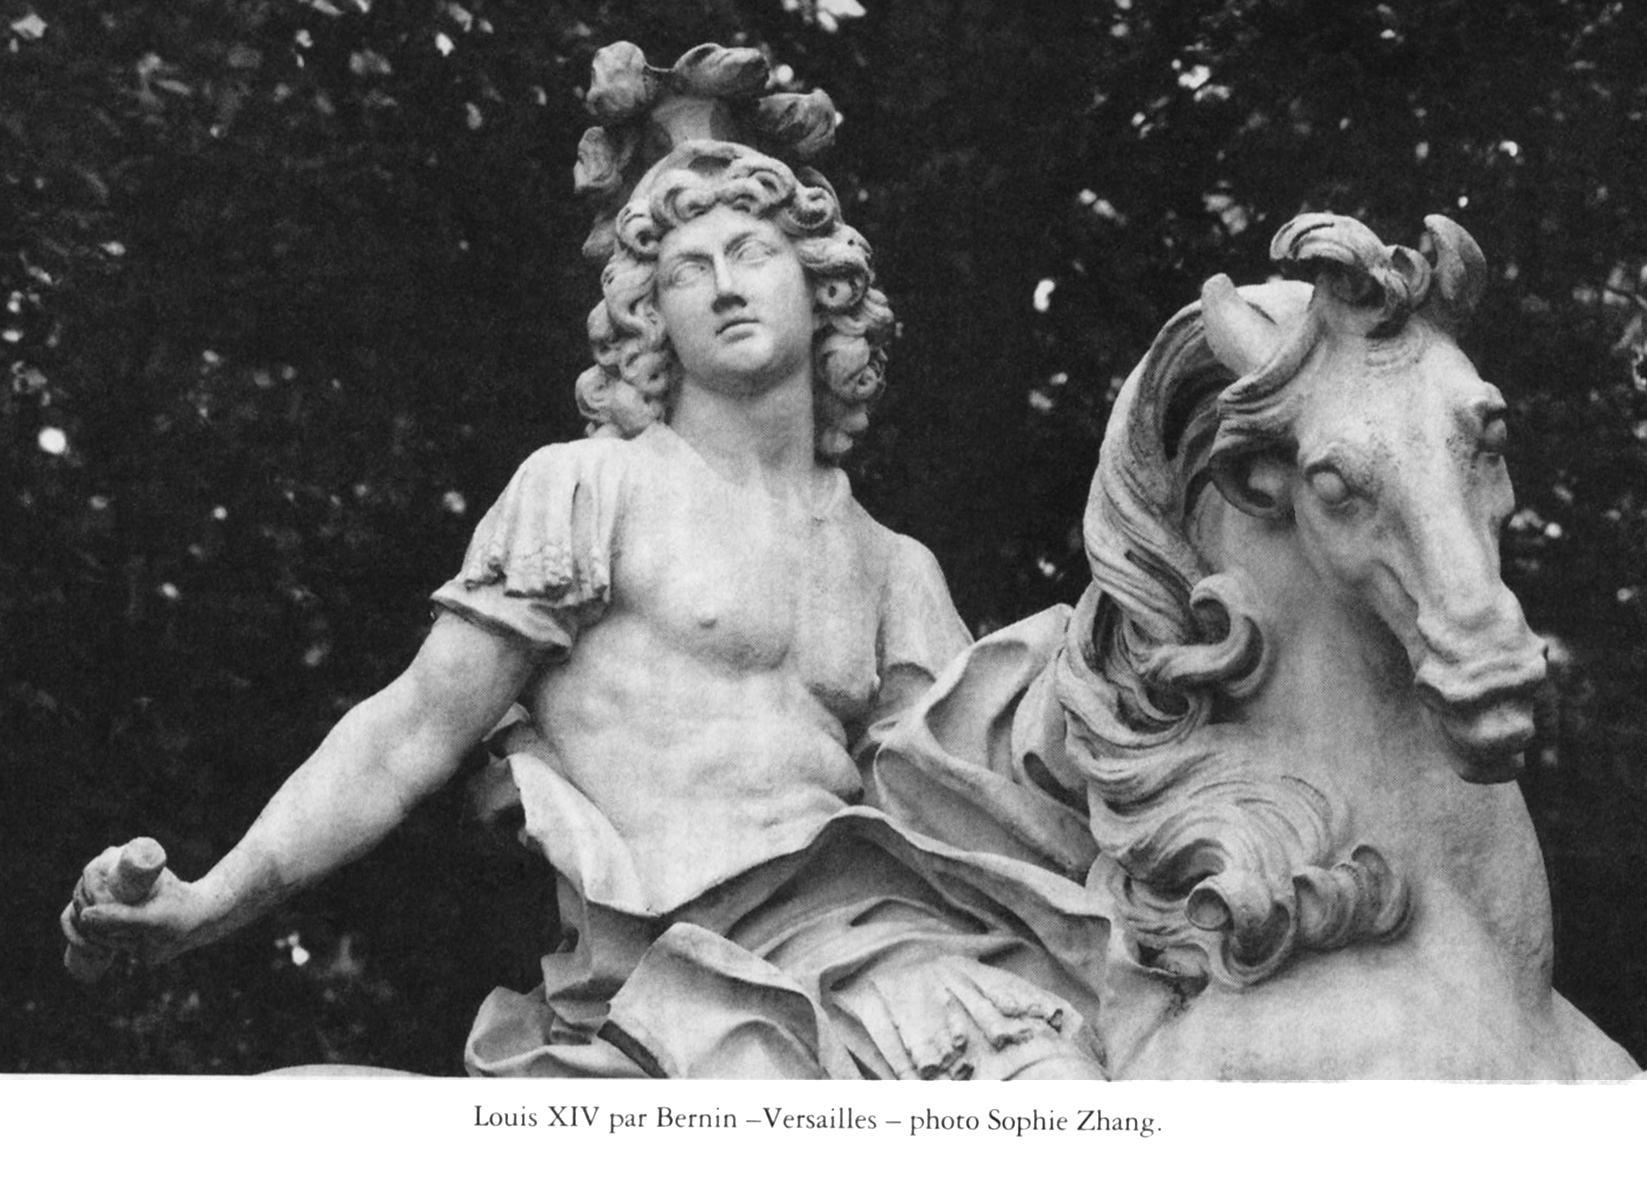 Louis XIV Bernin, photo Sophie Zhang